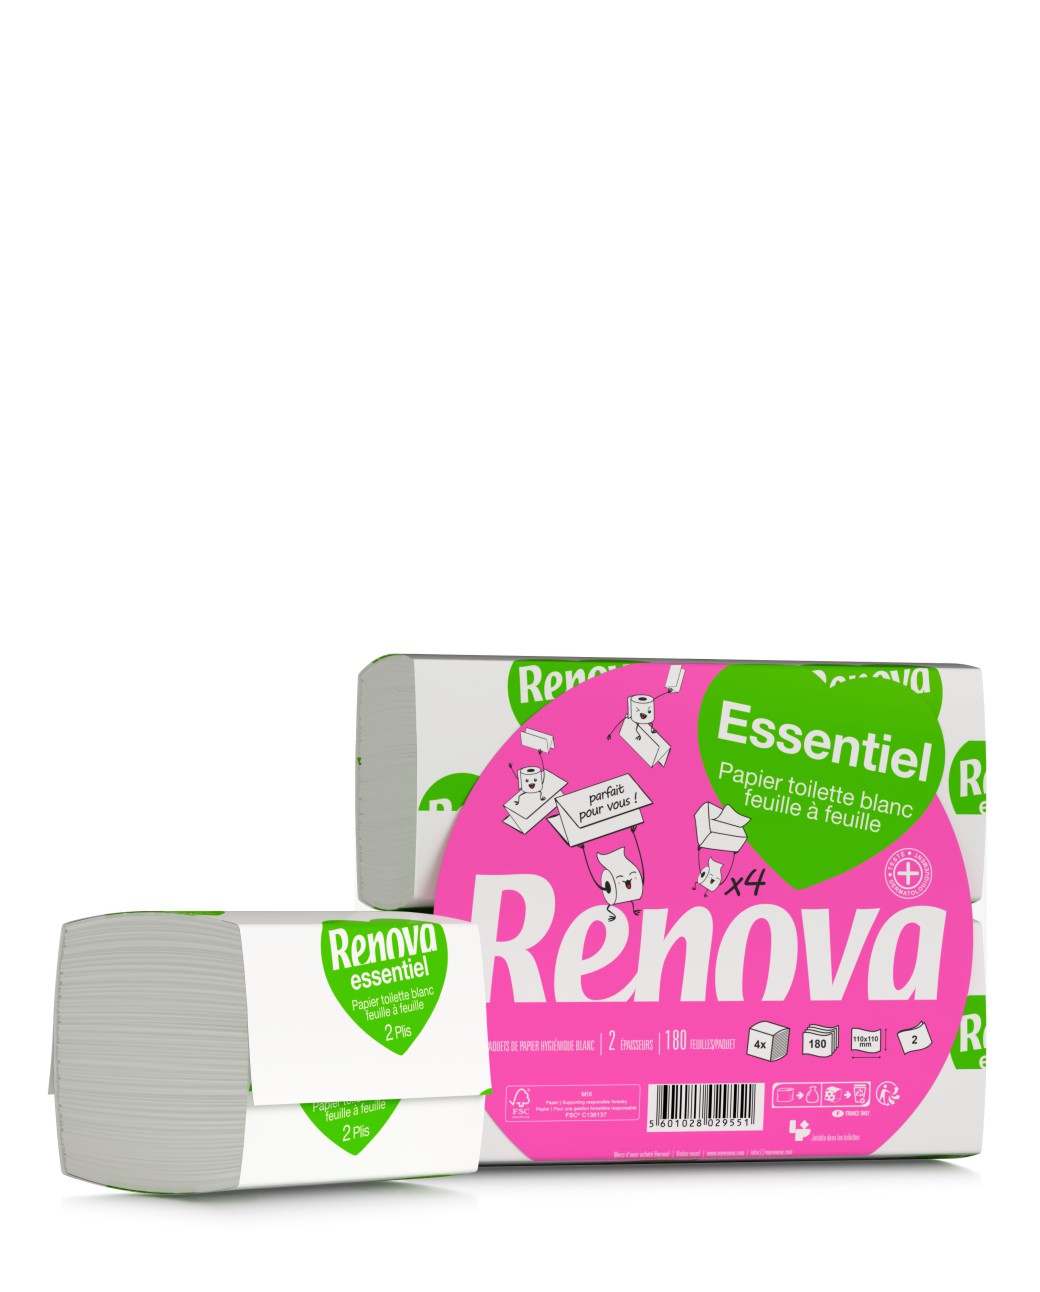 Renova, roi du papier toilette de luxe, lance une gamme abordable